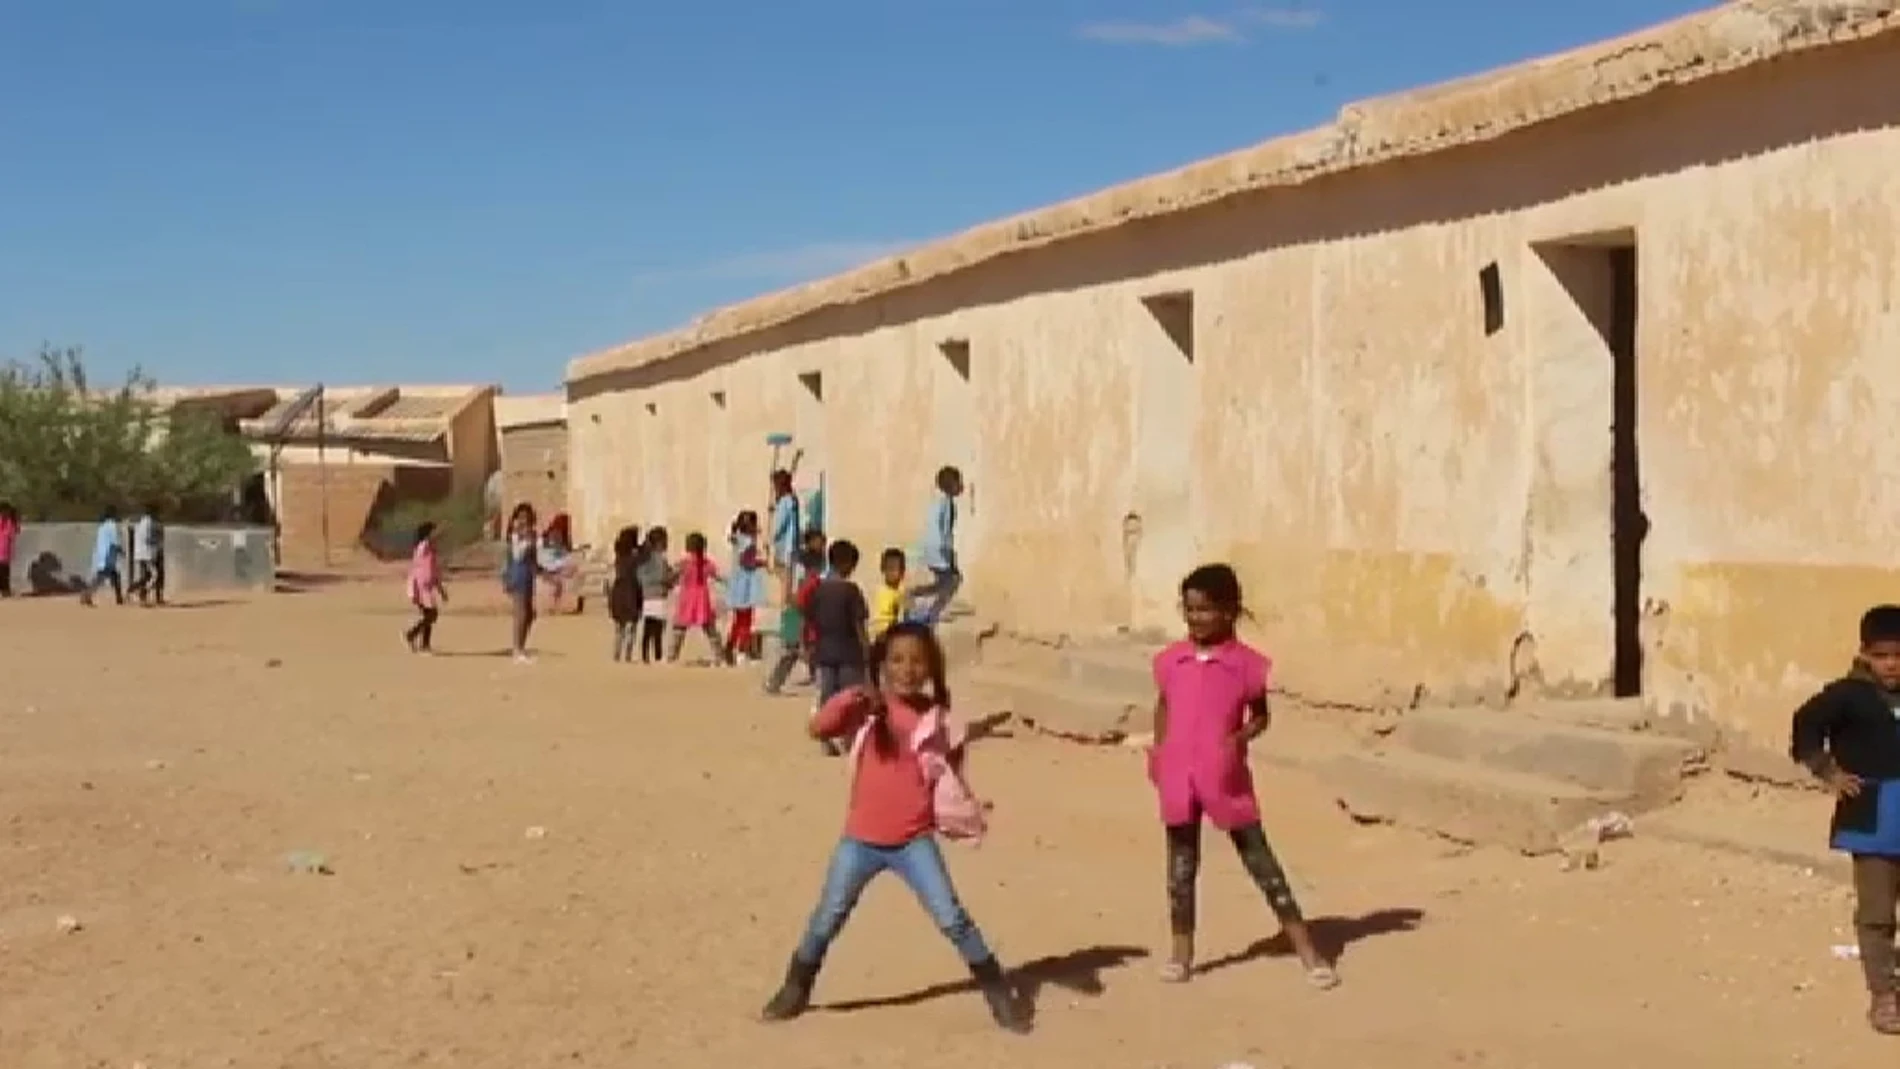 Cuatro mil niños saharauis pasarán este verano en el desierto a más de 50 grados